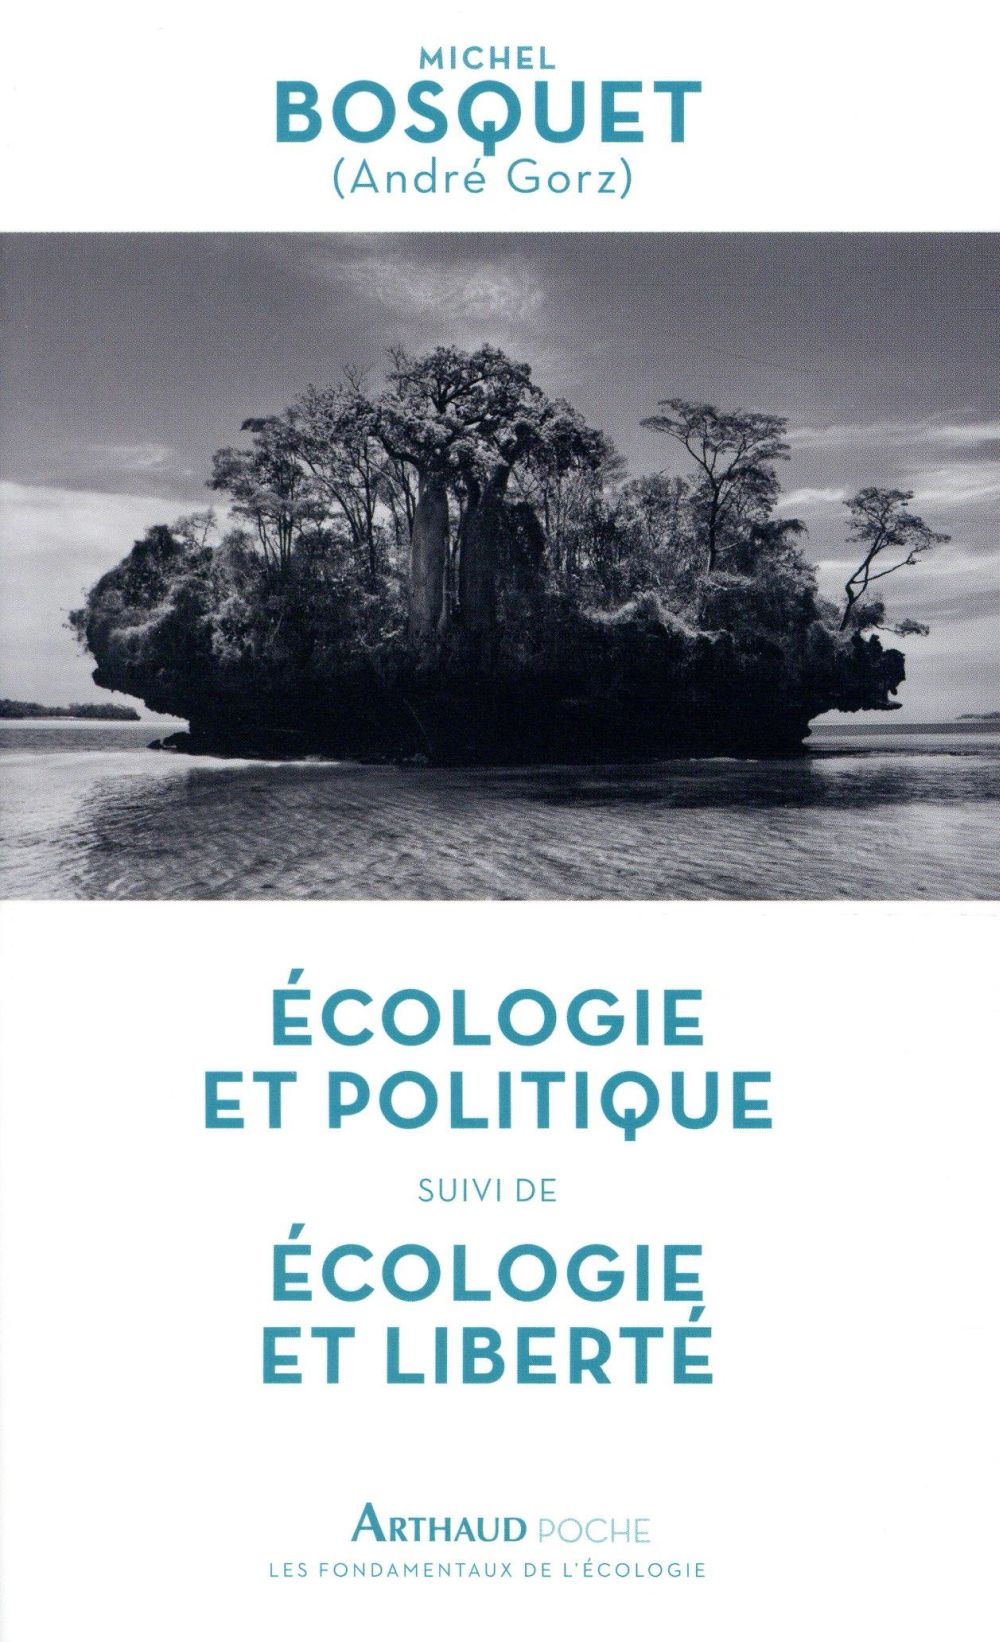 Couverture du livre ECOLOGIE ET POLITIQUE - ECOLOGIE ET LIBERTE